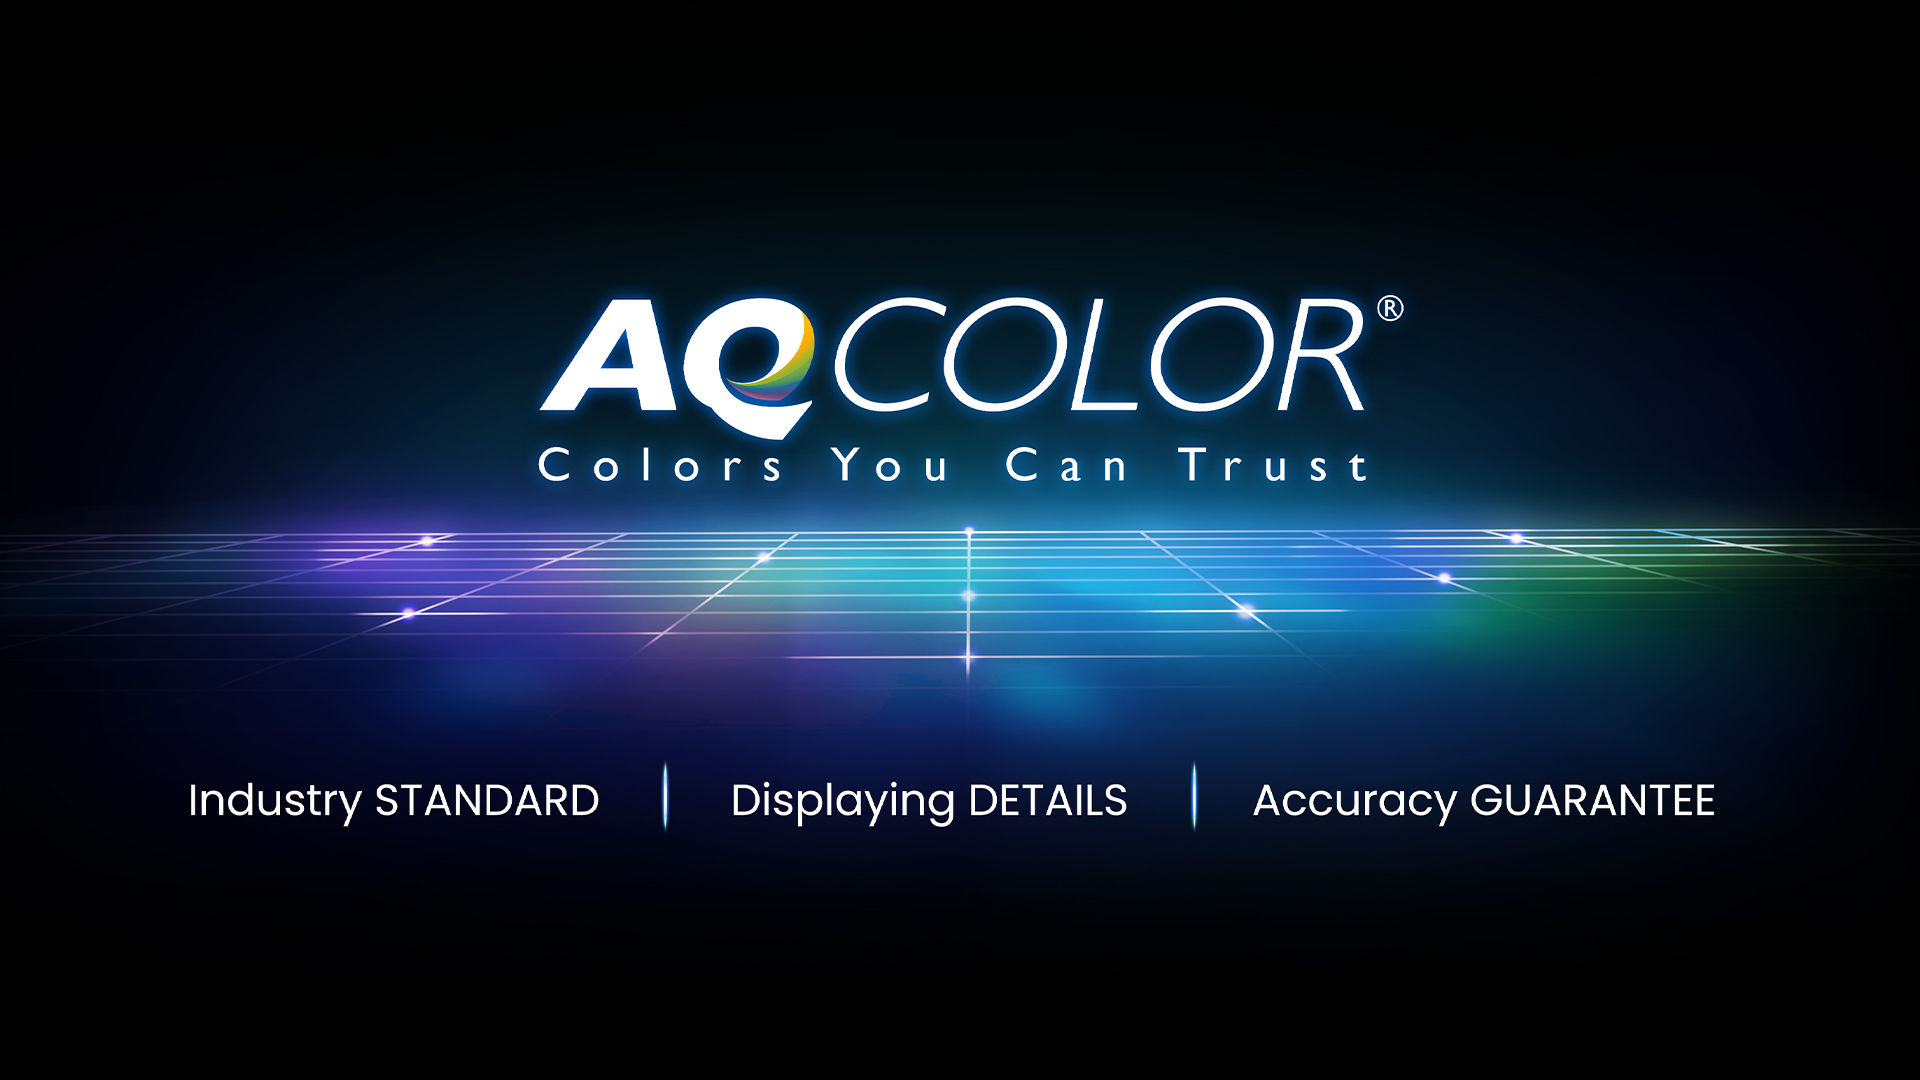 La tecnología BenQ AQCOLOR ofrece Reproducción Precisa. Esto se traduce en la visualización del color exactamente como se pretende que aparezca. Dirigido por un experto en color, el equipo de BenQ participó en la ICC y la ISO para establecer estándares relacionados con el color y pautas de implementación.